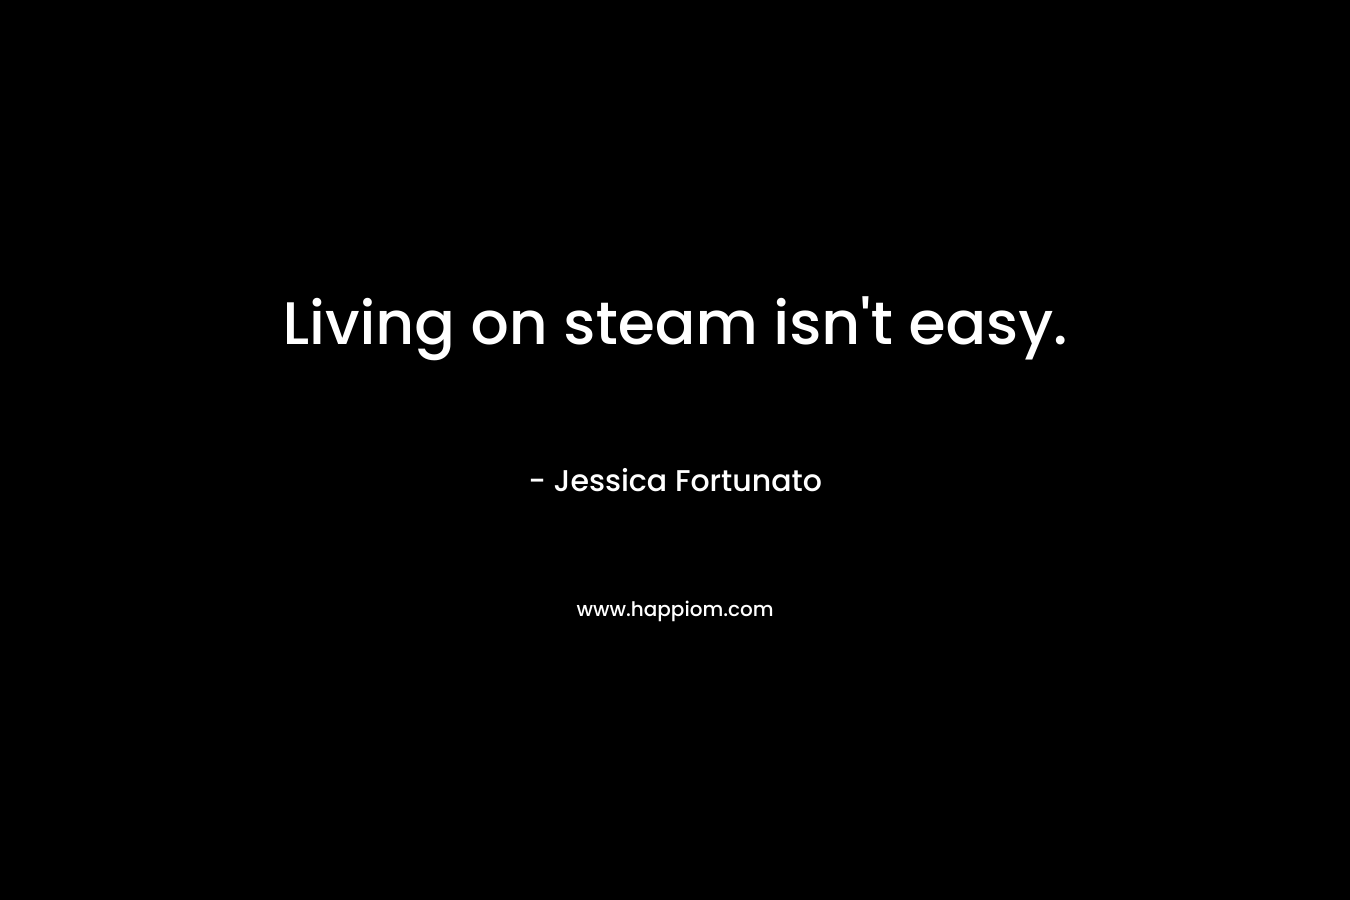 Living on steam isn't easy.